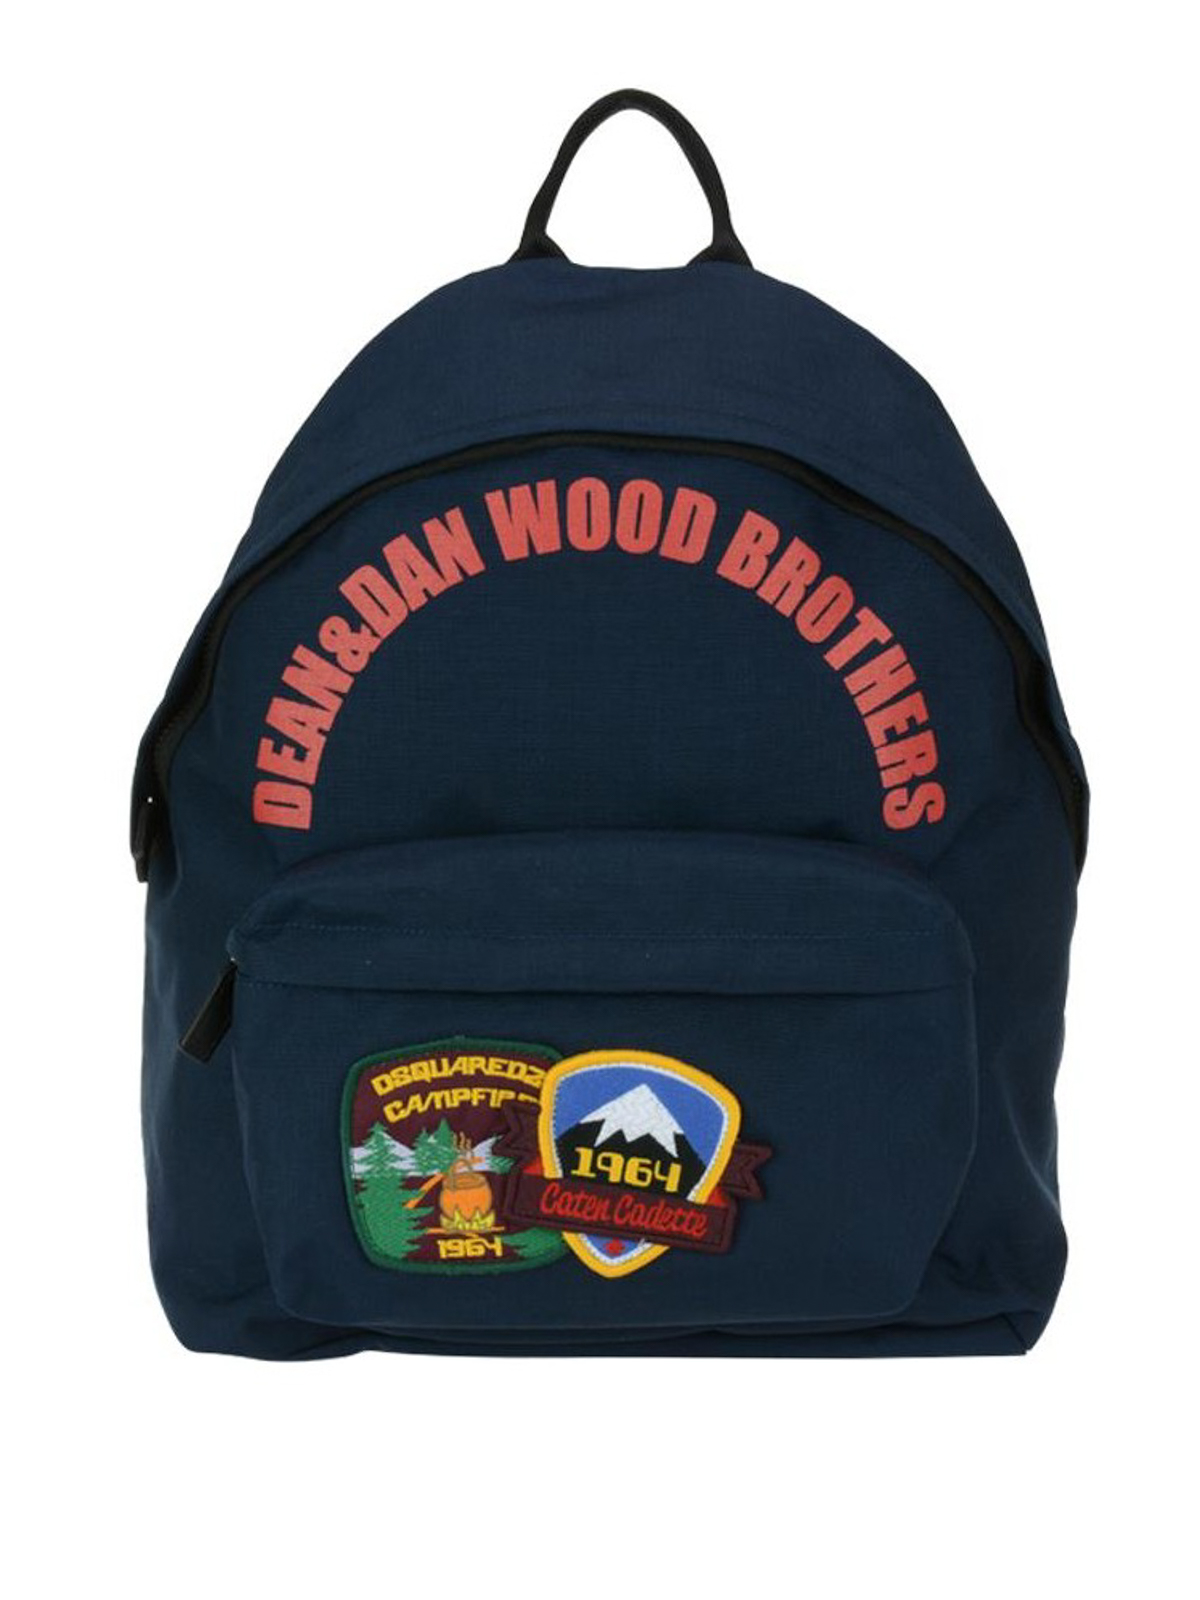 gek Voorbijganger Sherlock Holmes Backpacks Dsquared2 - Bad Scout backpack - BPM0004117003973073 | iKRIX.com